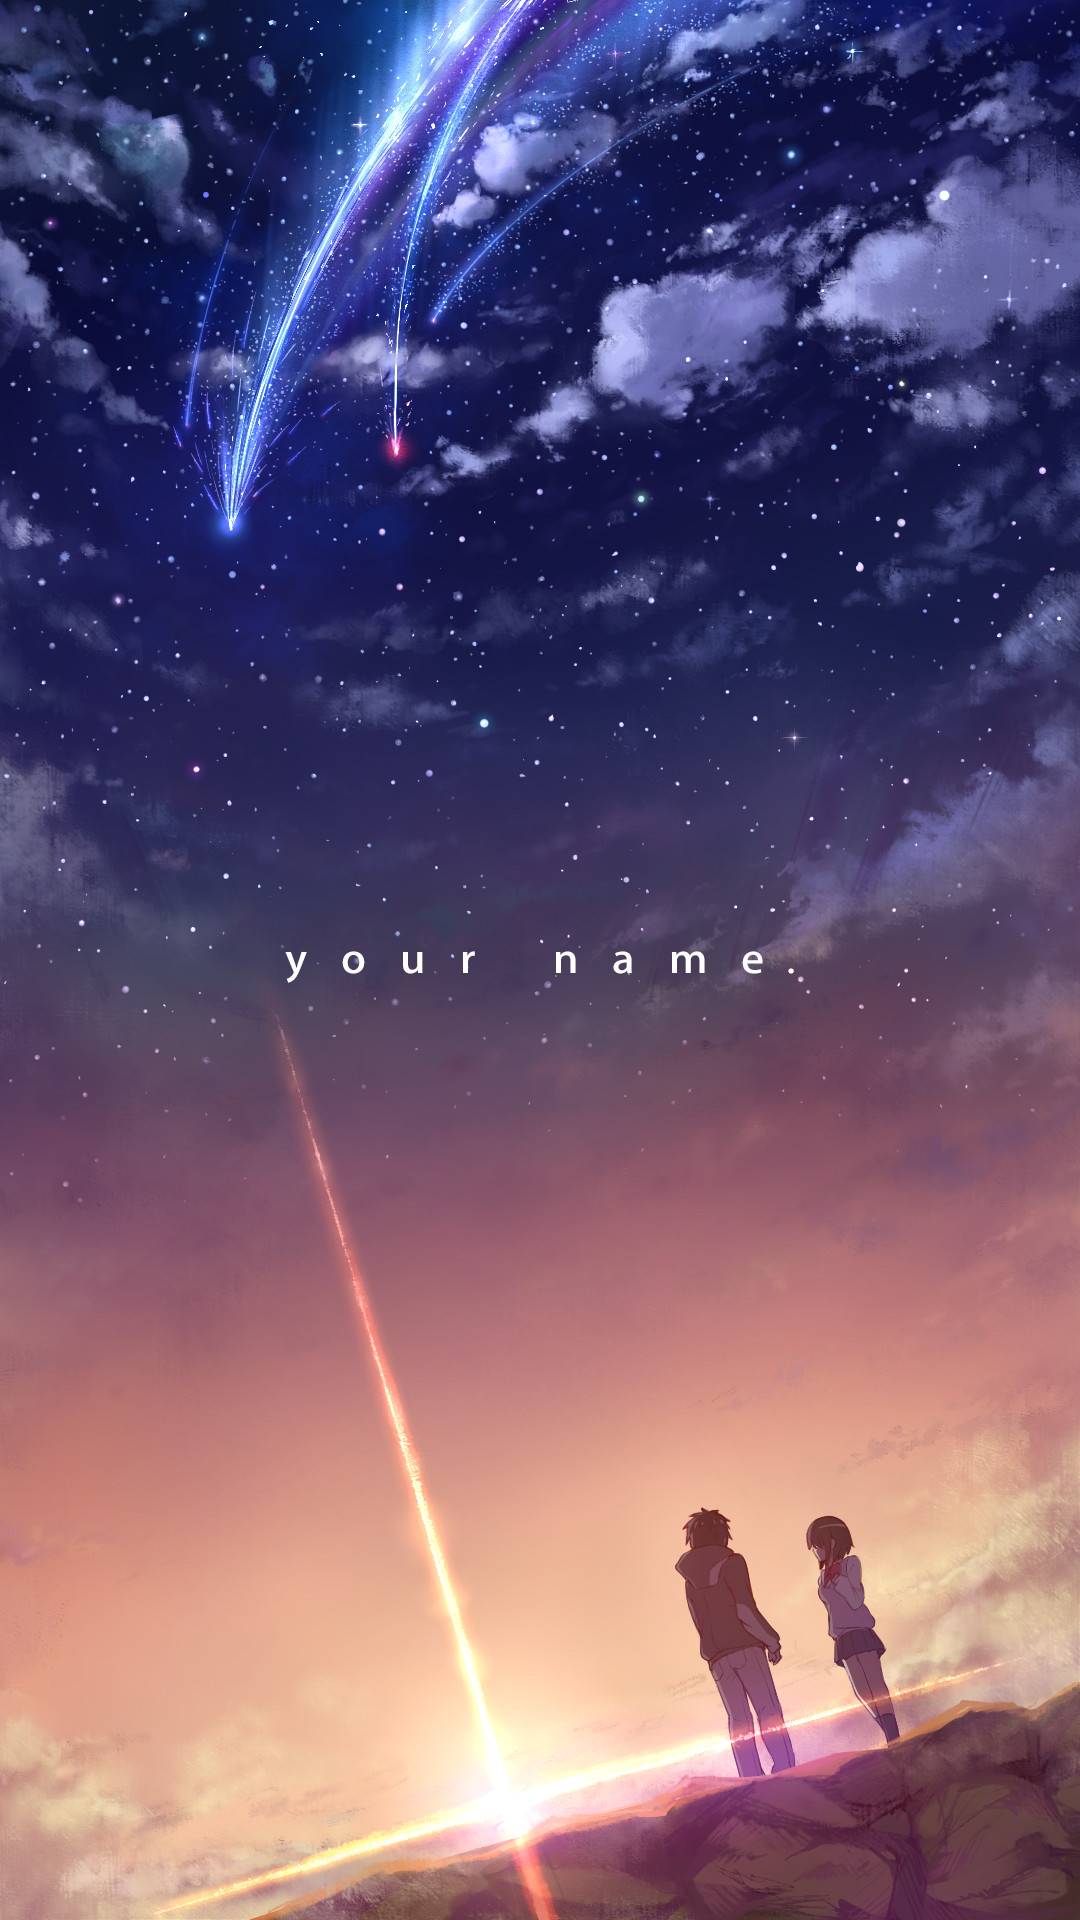 Your Name/Kimi no na wa